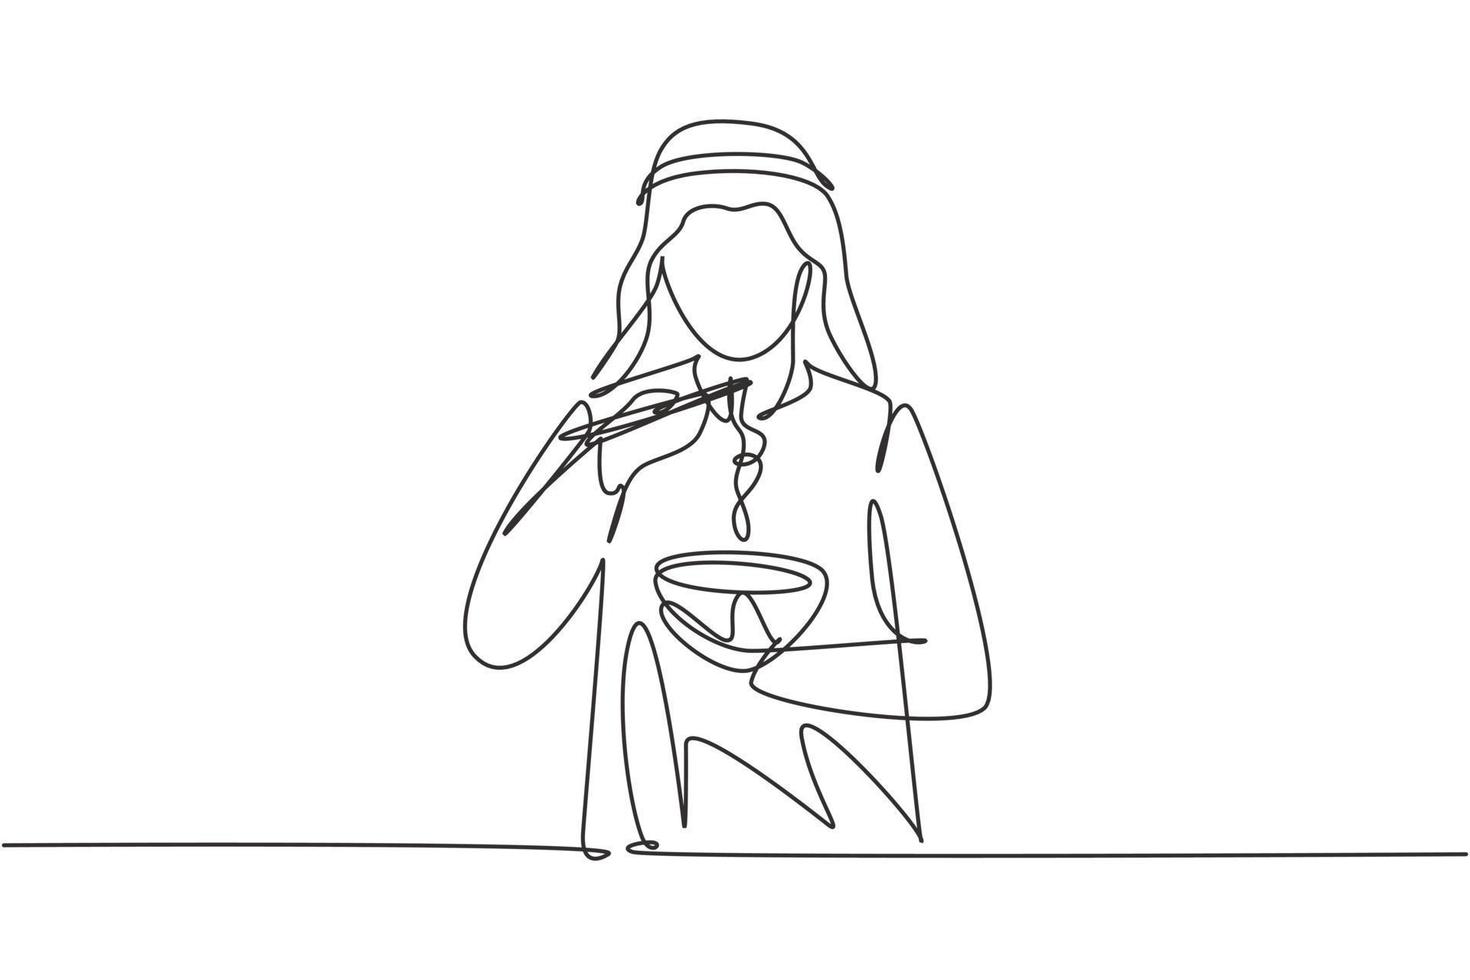 única linha de desenho jovem árabe comendo macarrão com pauzinhos ao redor da mesa. aproveite o almoço quando estiver com fome. comida deliciosa e saudável. linha contínua desenhar design gráfico ilustração vetorial vetor